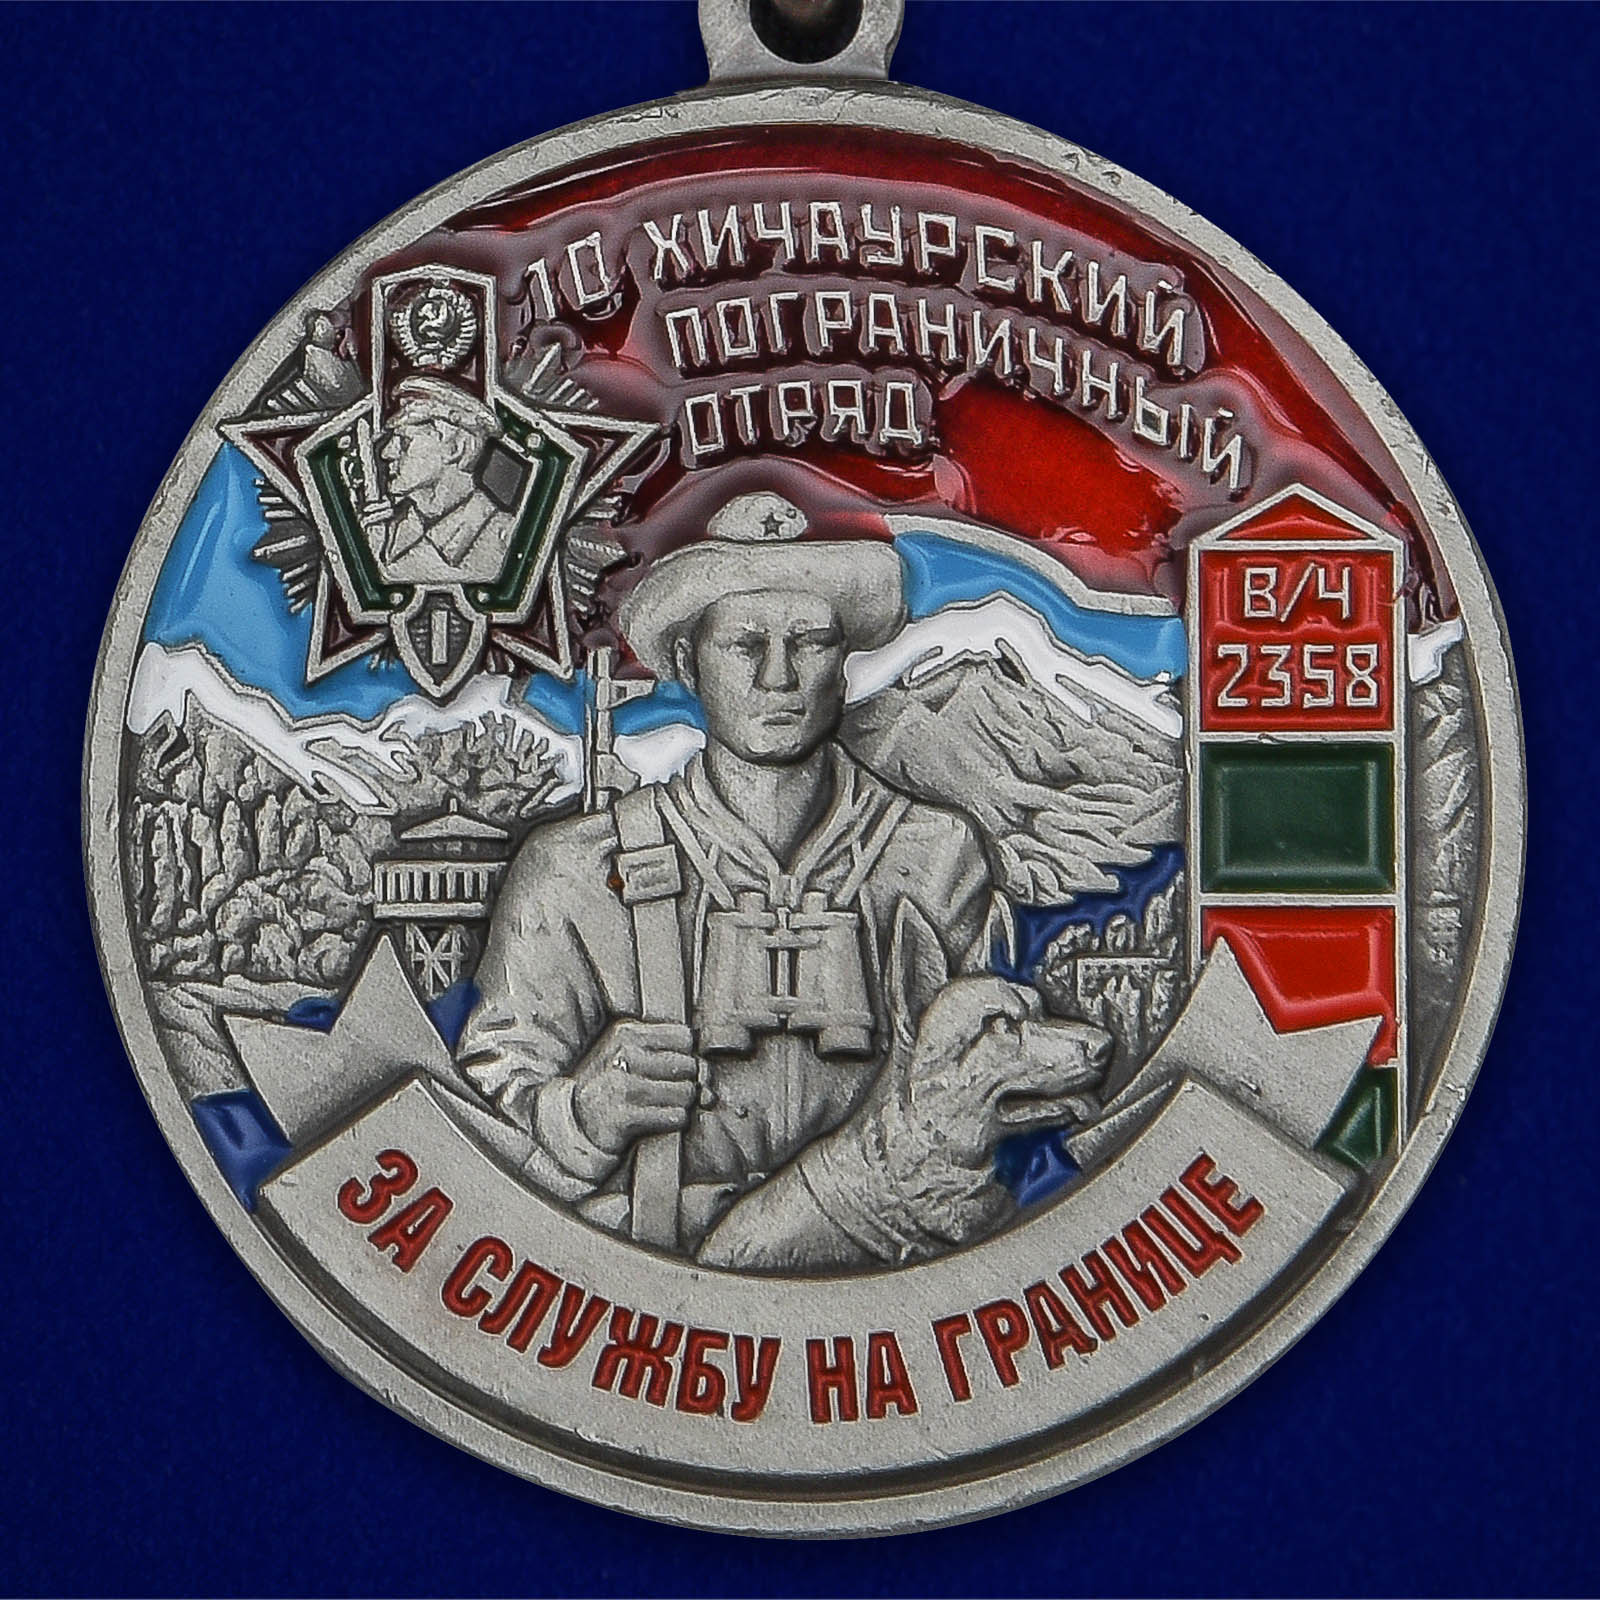 Медаль "За службу в Хичаурском пограничном отряде" 